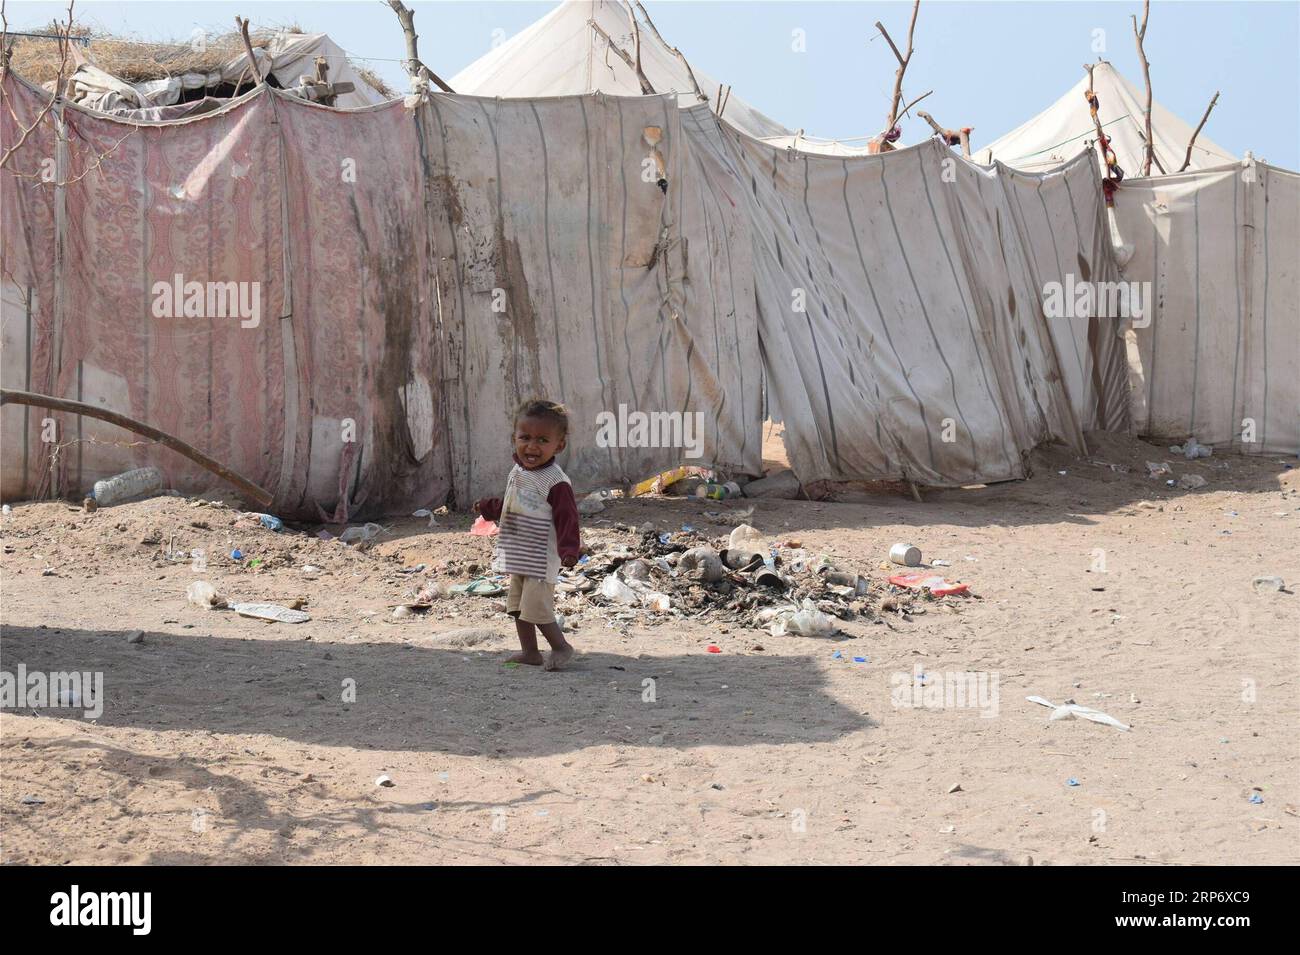 (190121) -- HODEIDAH (JEMEN), 21. Januar 2019 () -- Ein Kind geht am 21. Januar 2019 in der Nähe seines Zeltes in einem Vertreibungslager in Hodeidah, Jemen. Die beiden kriegführenden Seiten des Jemen hatten im vergangenen Monat unter der Schirmherrschaft der Vereinten Nationen eine Waffenstillstandsvereinbarung getroffen, doch konnte das Leid der Binnenvertriebenen in der Hafenstadt Hodeidah am Roten Meer nicht verringert werden. () JEMEN-HODEIDAH-BINNENVERTRIEBENE Xinhua PUBLICATIONxNOTxINxCHN Stockfoto